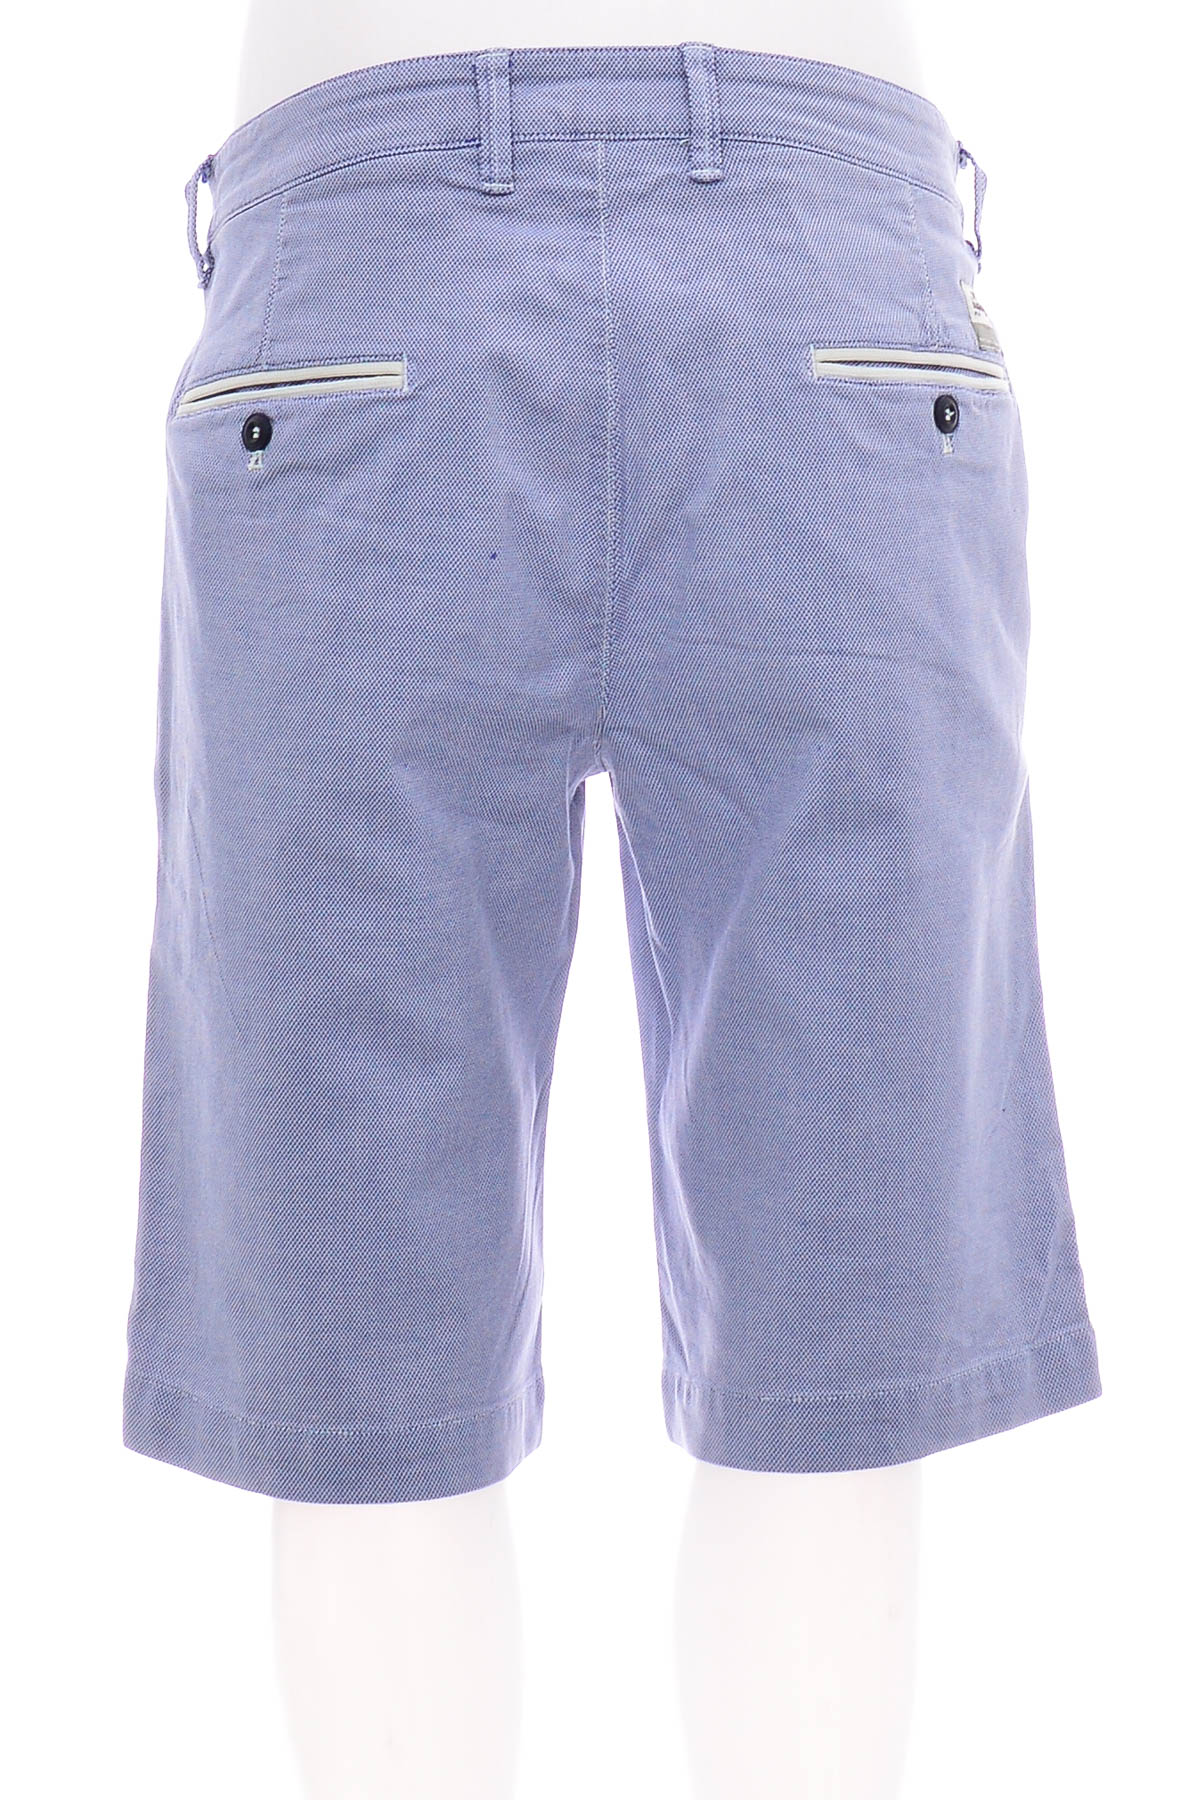 Men's shorts - Mason's - 1